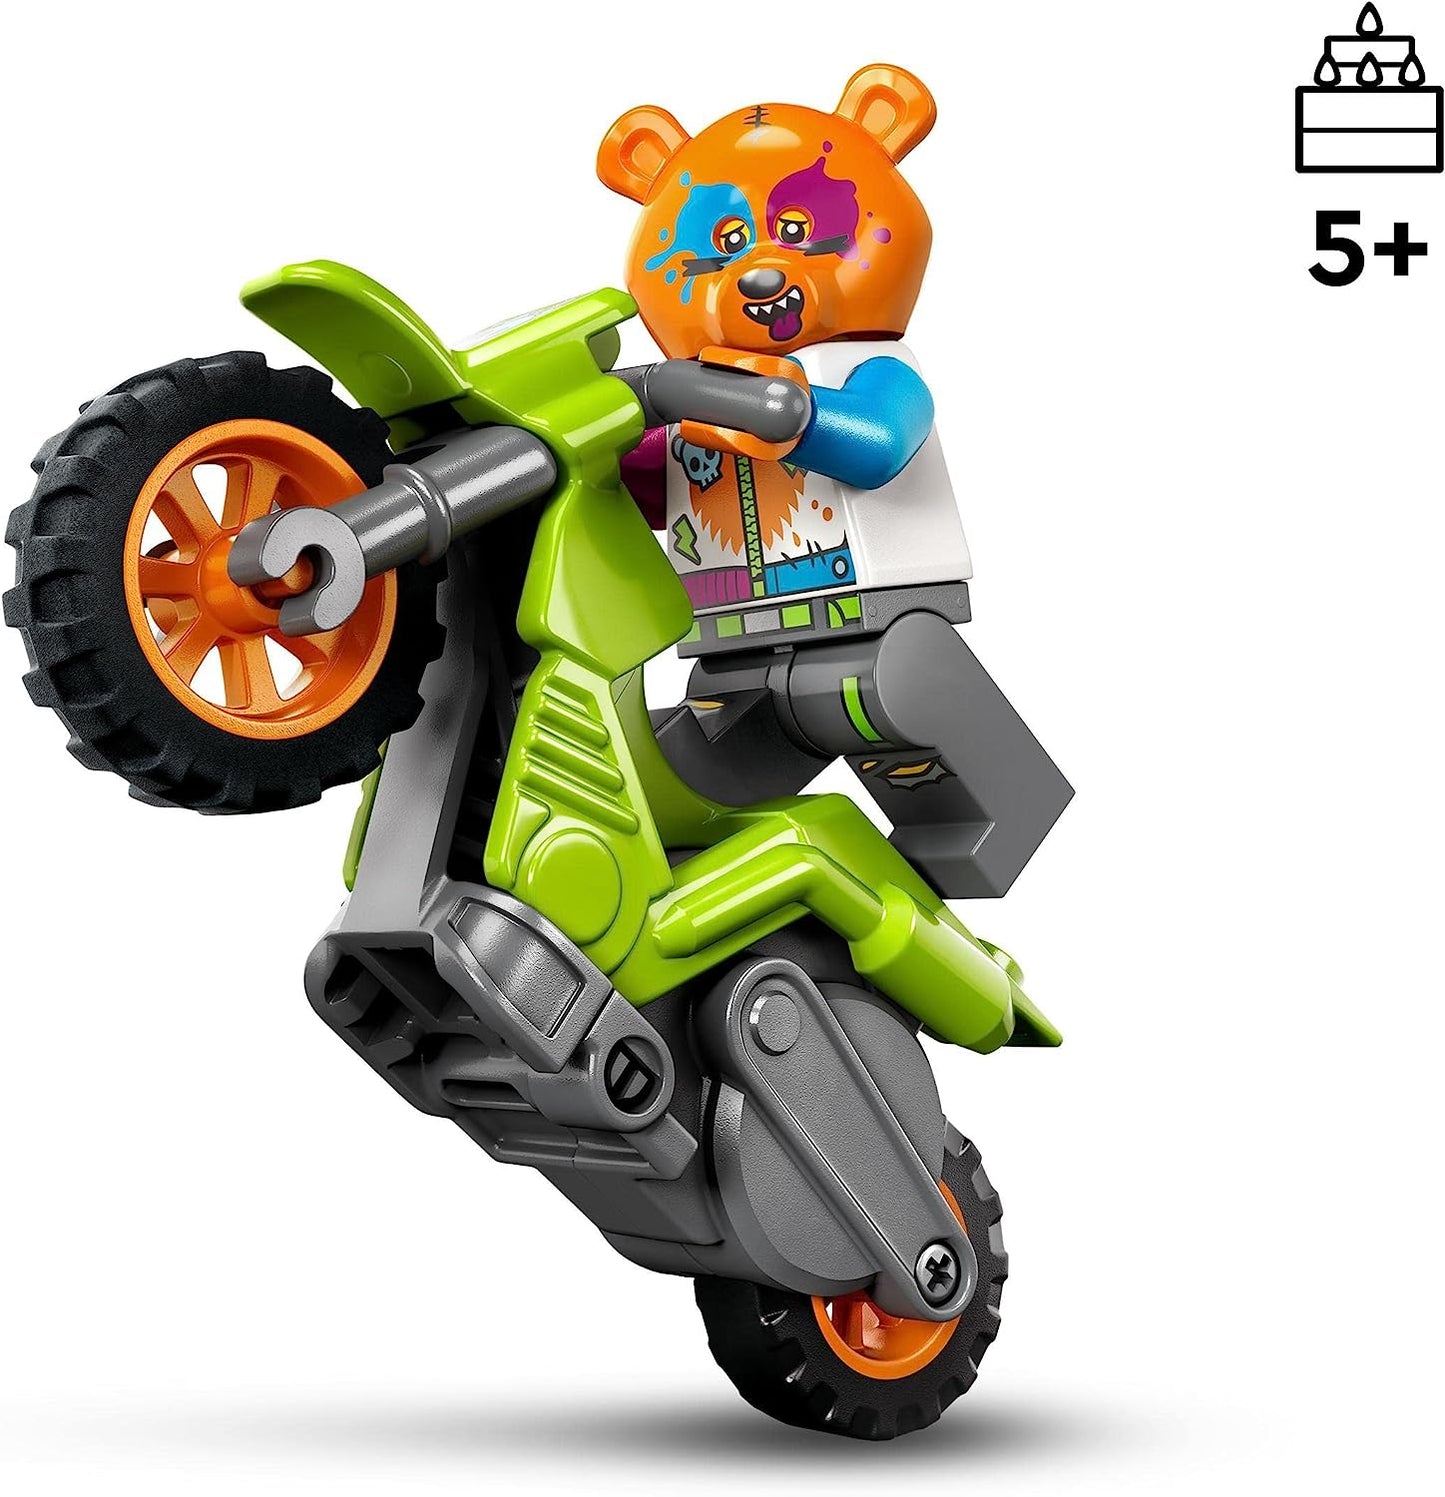 LEGO 60356 City Stuntz Bären-Stuntbike Motorrad Spielzeug mit Rennfahrer Minifigur